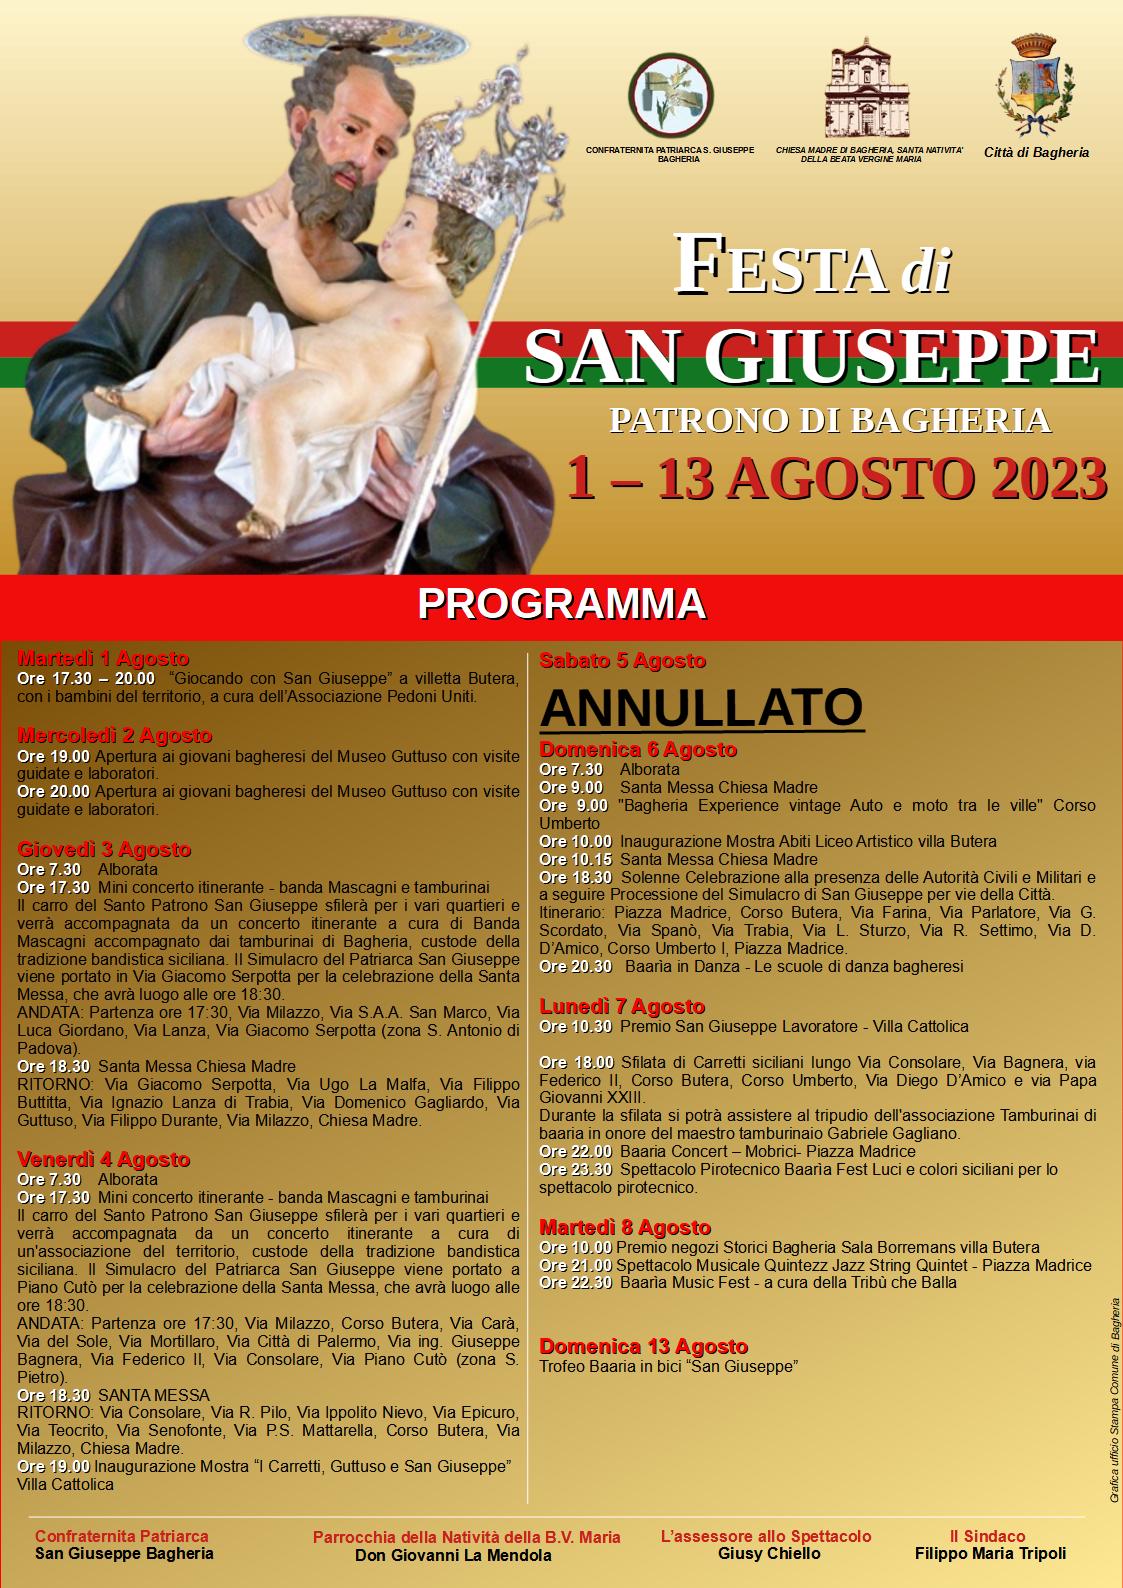 Festa di San Giuseppe: Il programma di Martedì 8 agosto Premio Negozi Storici, Quintezz Jazz e La Tribù che balla.